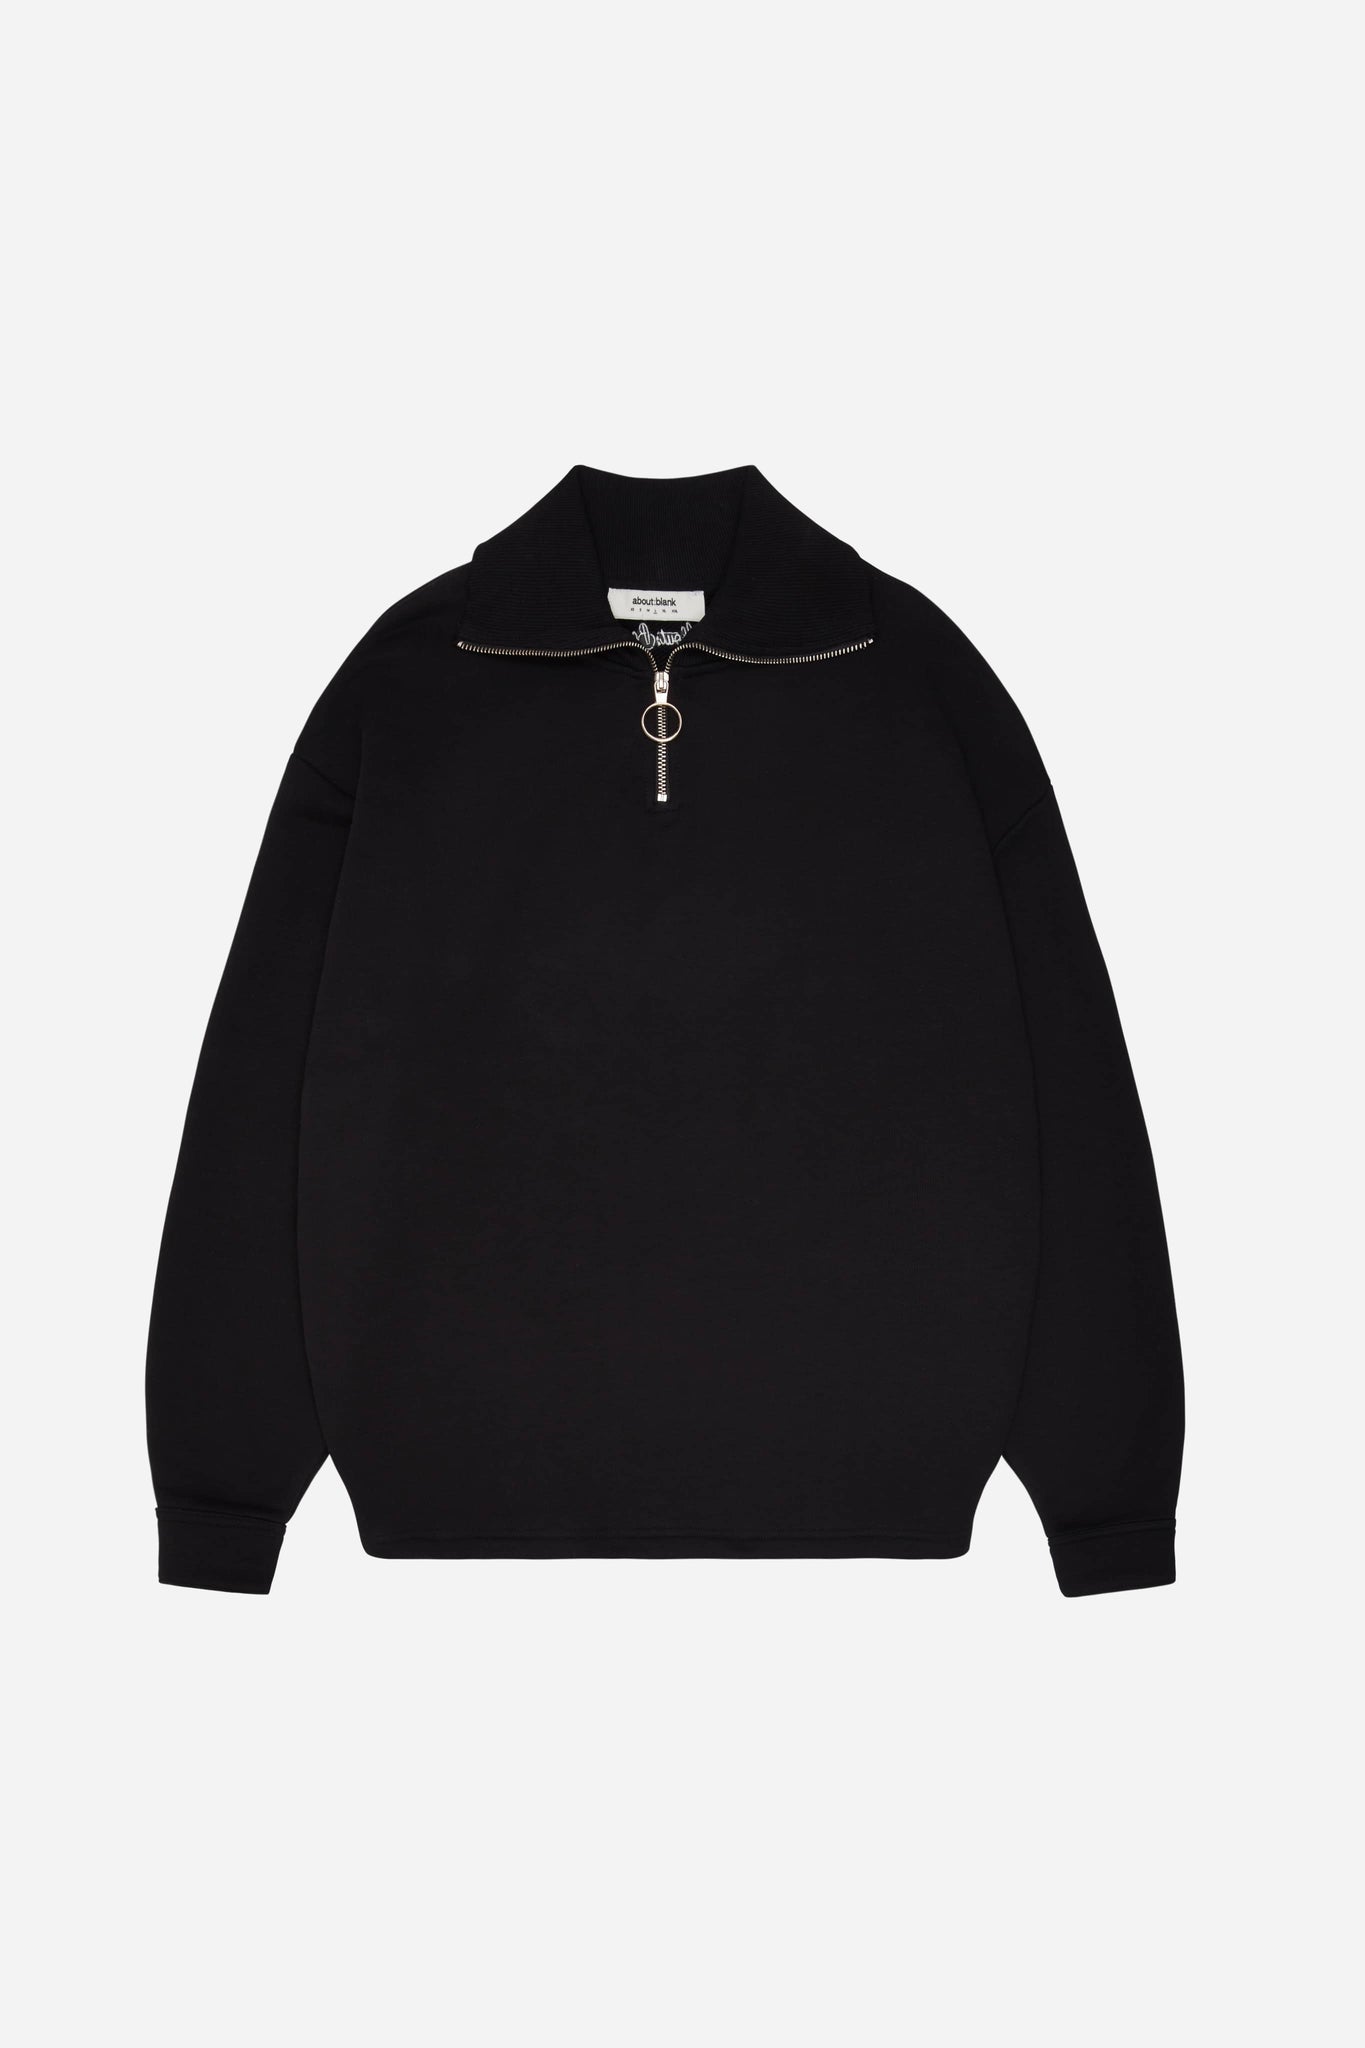 1/4 zip sweatshirt black